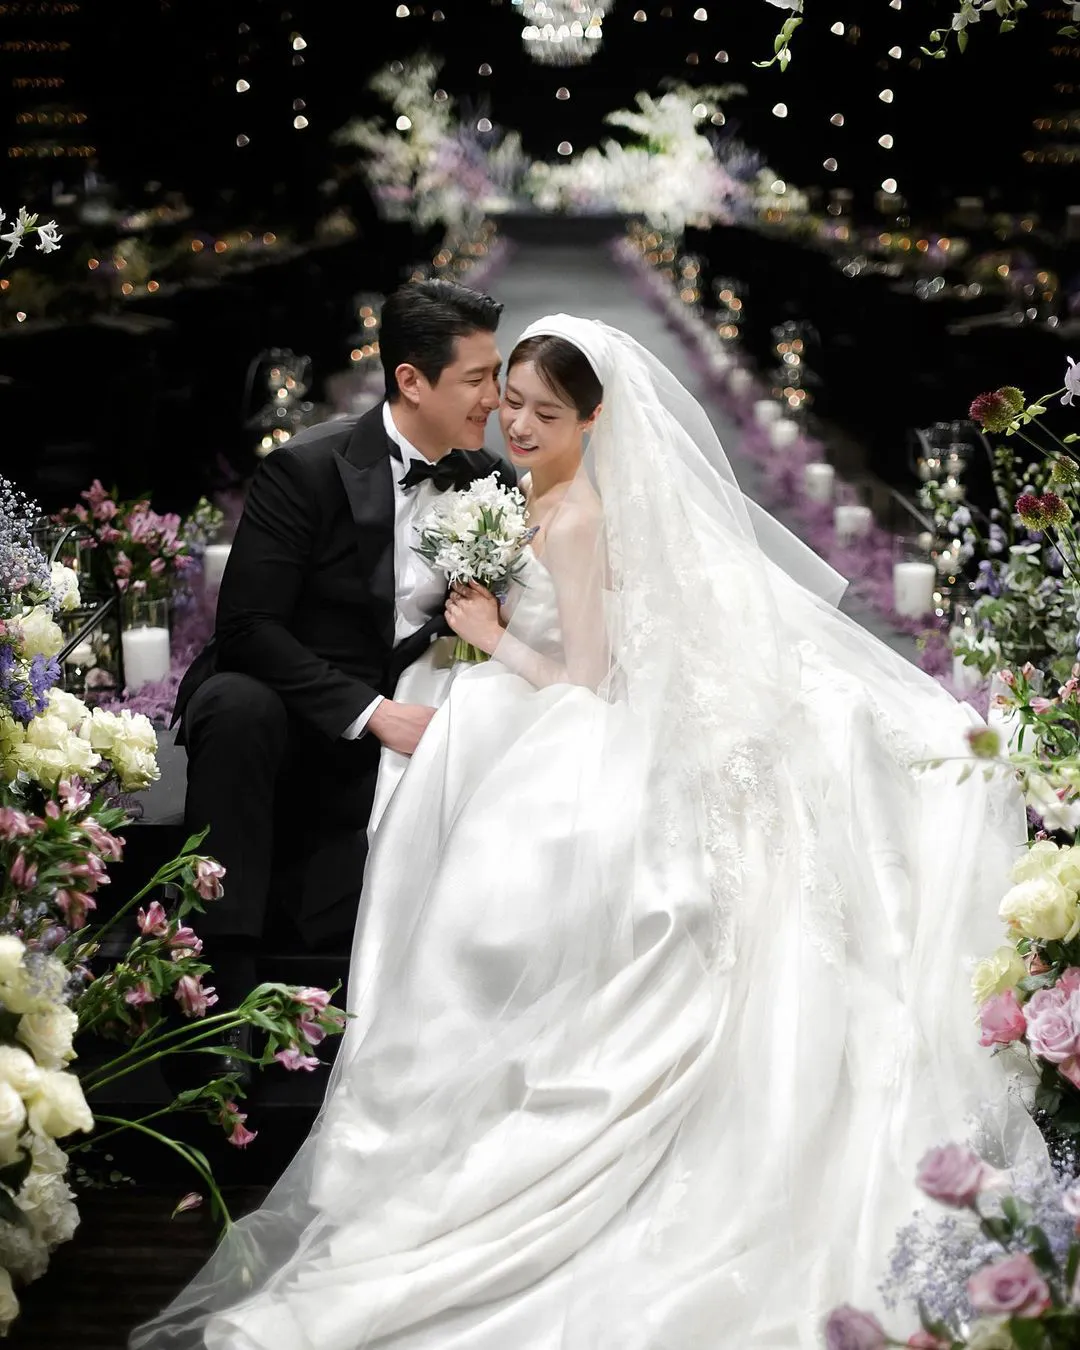 2022 - Năm Kbiz toàn tin hỷ của sao hạng A: Đám cưới BinJin và Park Shin Hye như lễ trao giải, Gong Hyo Jin - Jiyeon quá độc lạ - Ảnh 18.